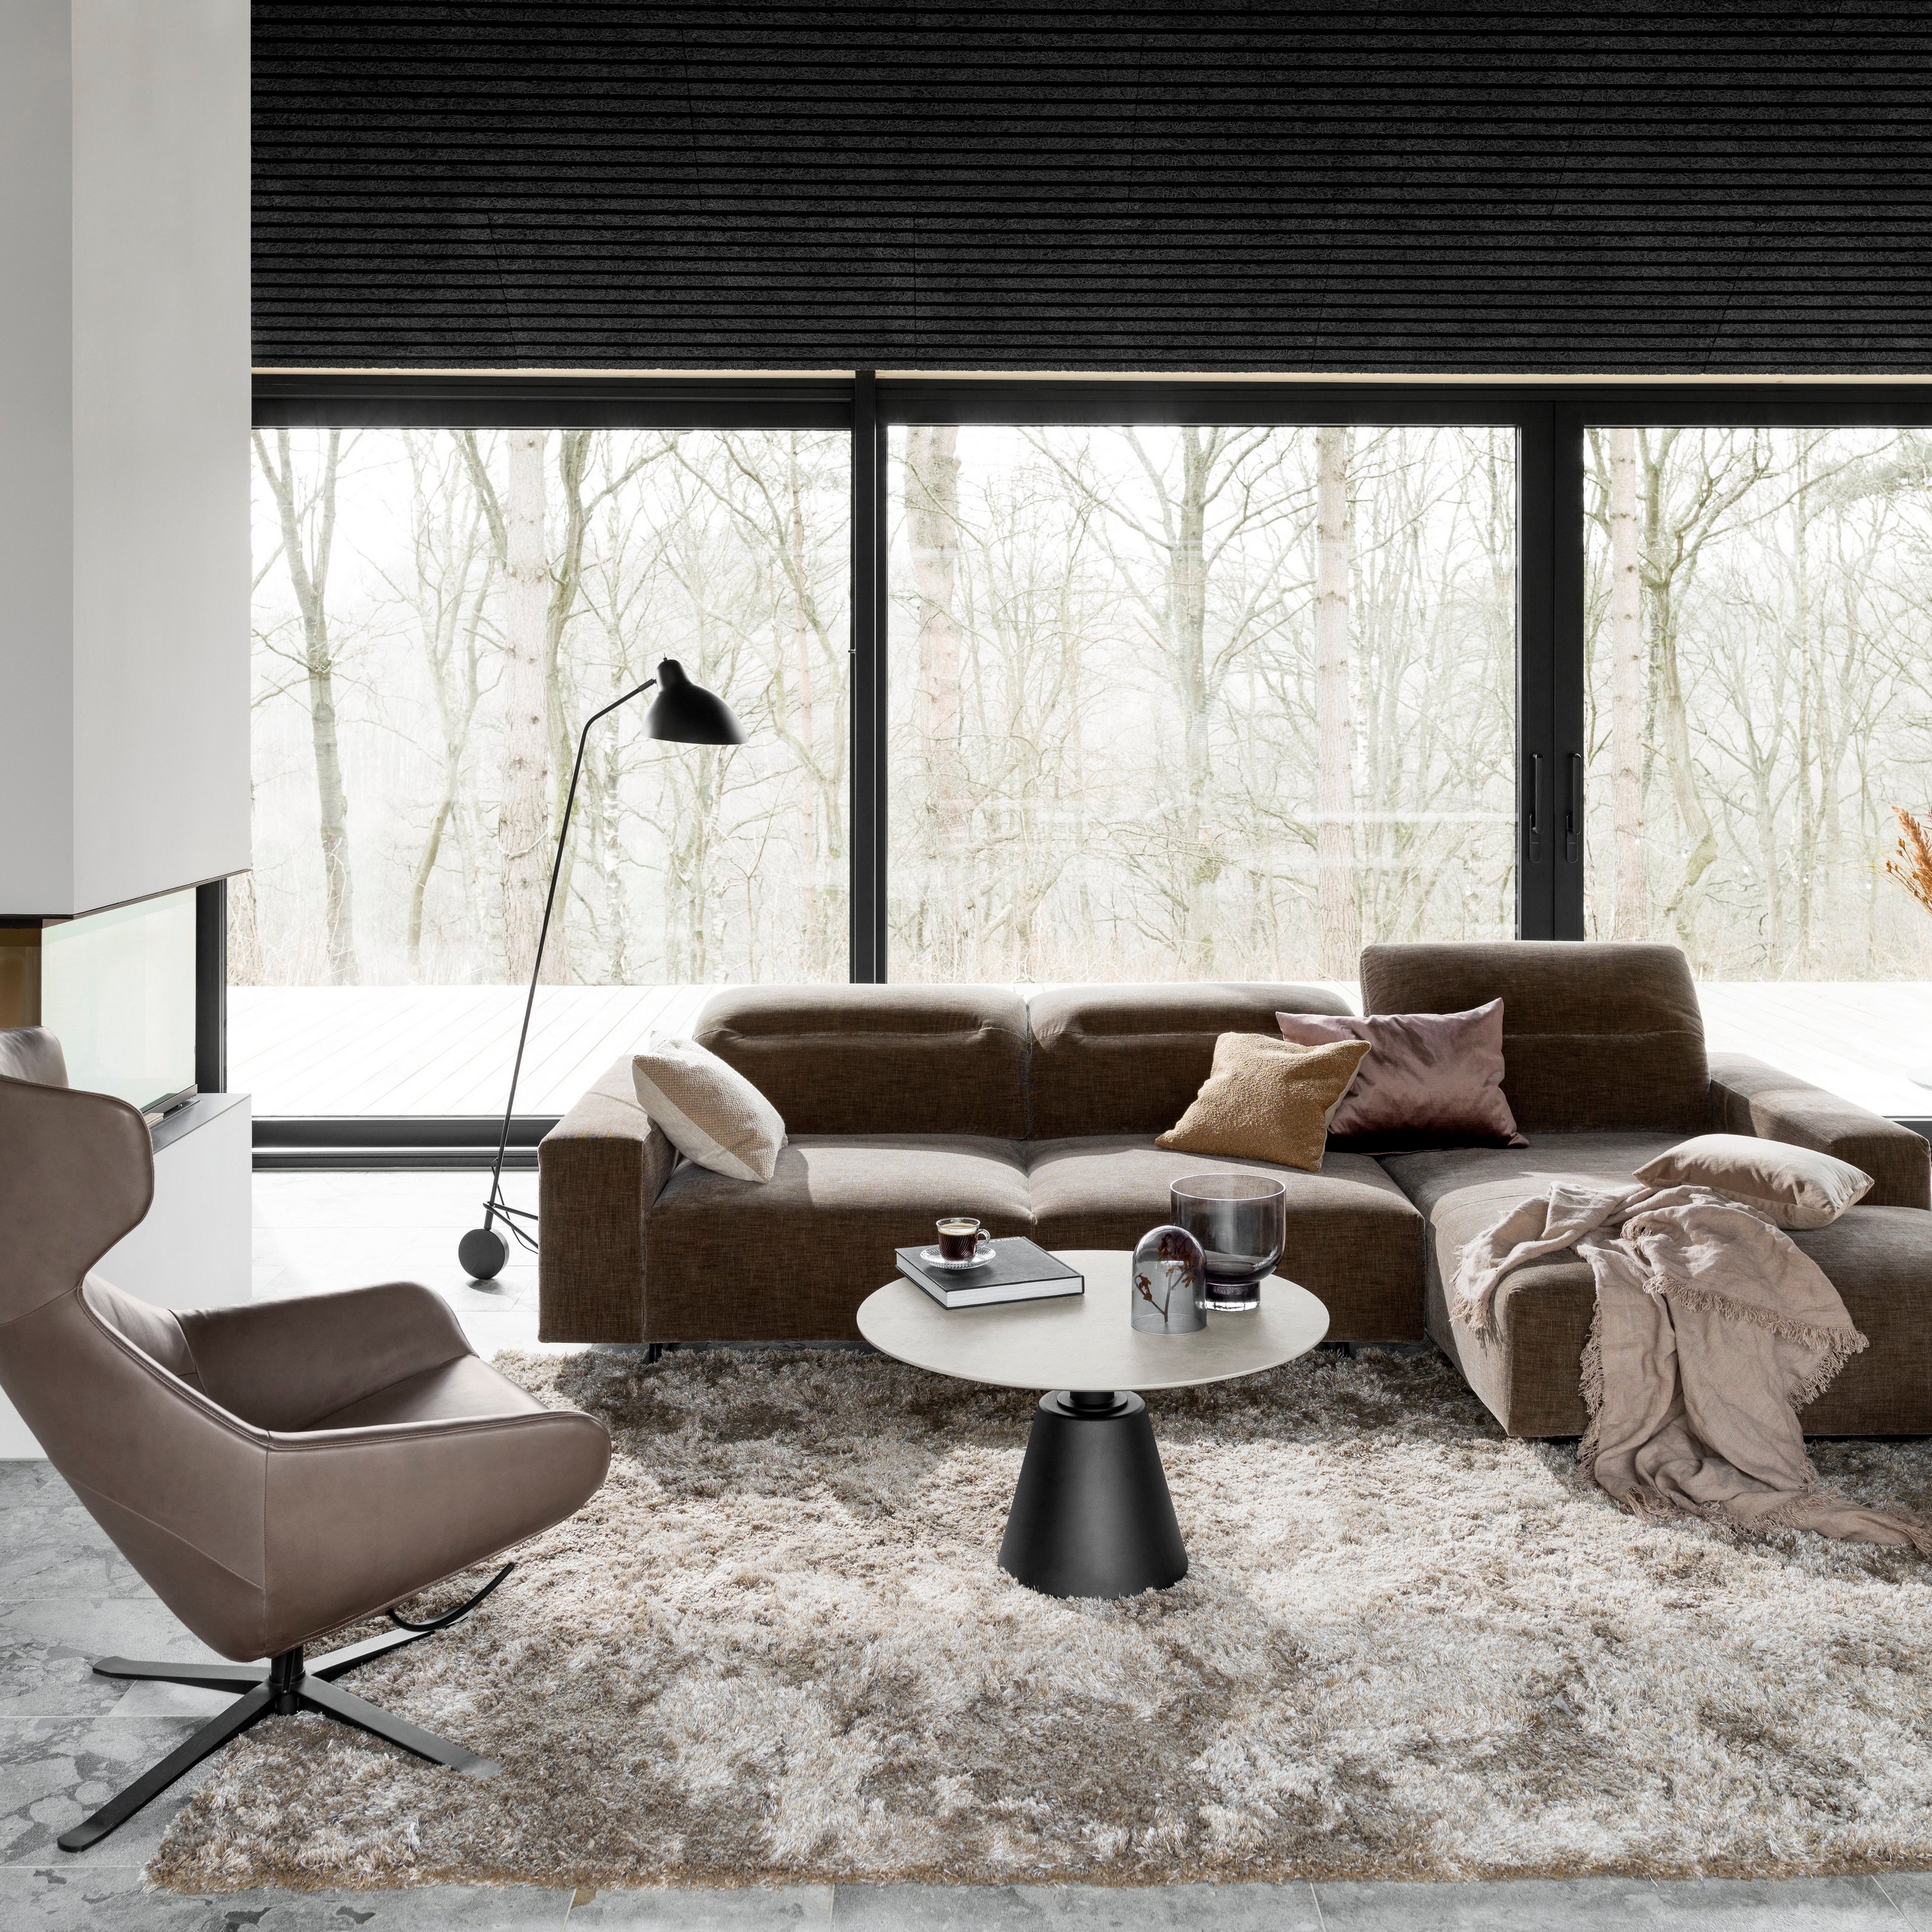 Sala moderna con sofá seccional marrón, alfombra gris y lámpara de pie negra junto a la ventana.